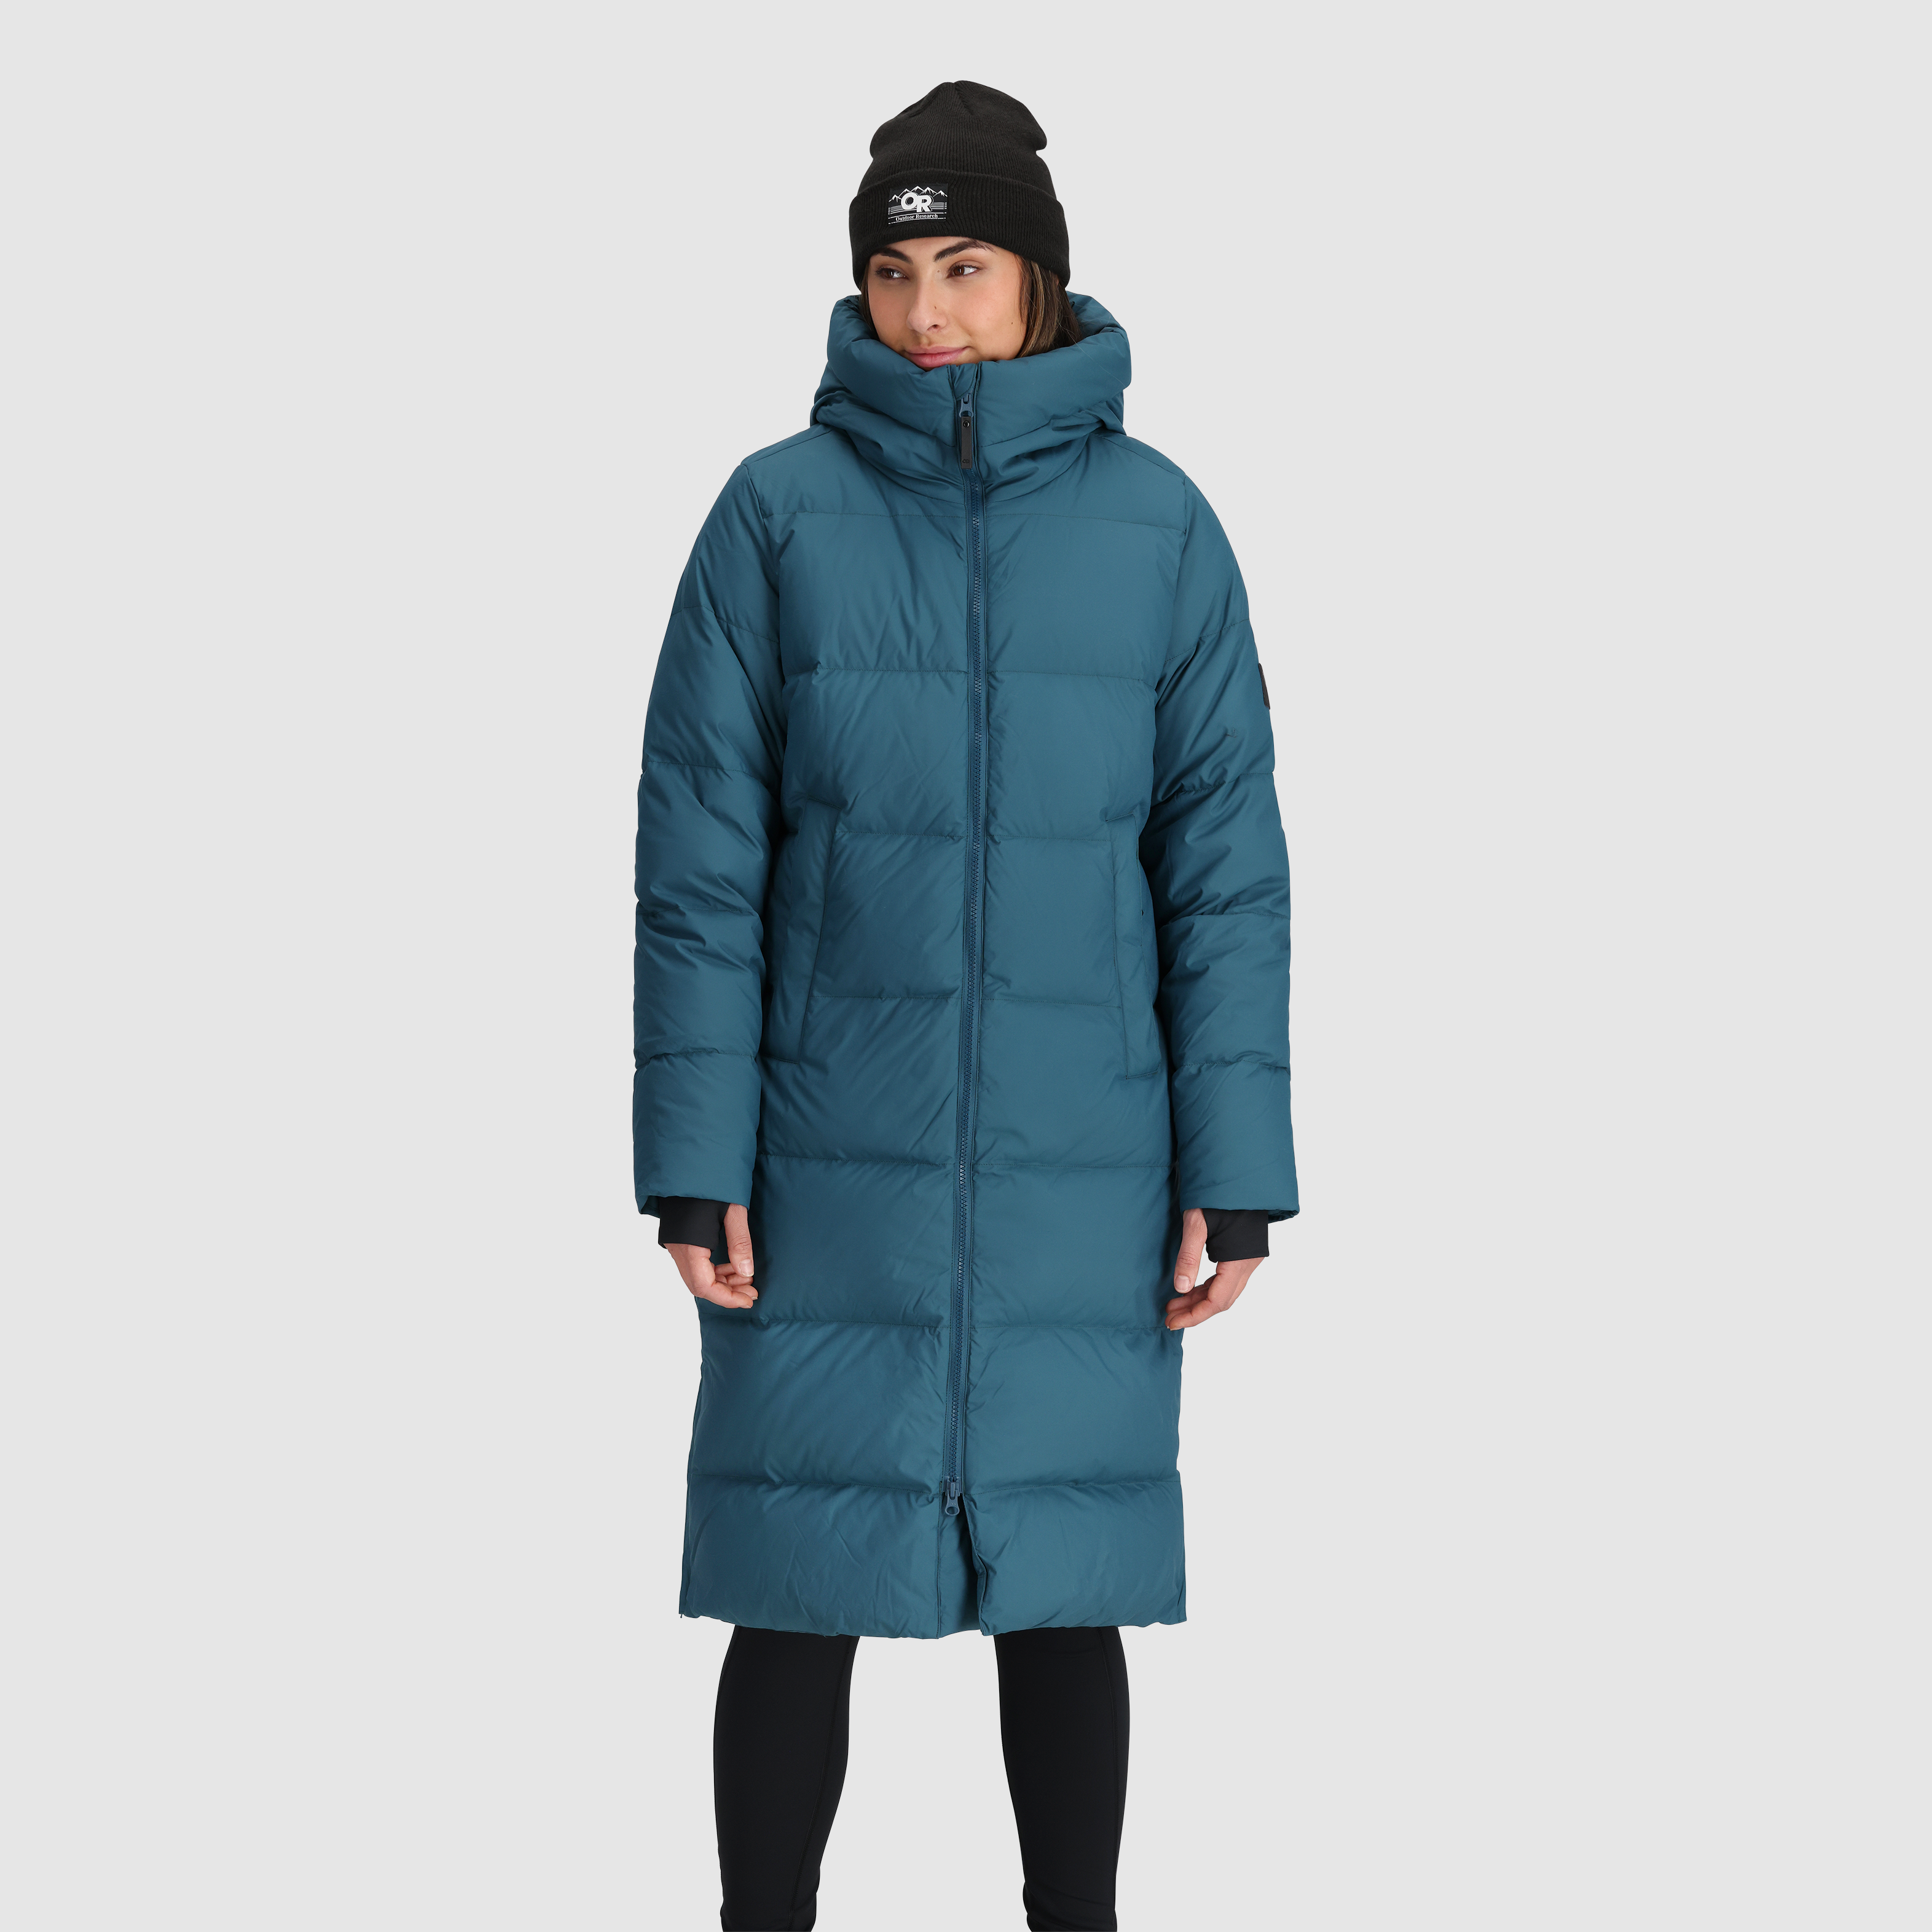 Marmot Womens Blue Fleece Lined Windbreaker Jacket Coat Hiking Cycling  Size: XL